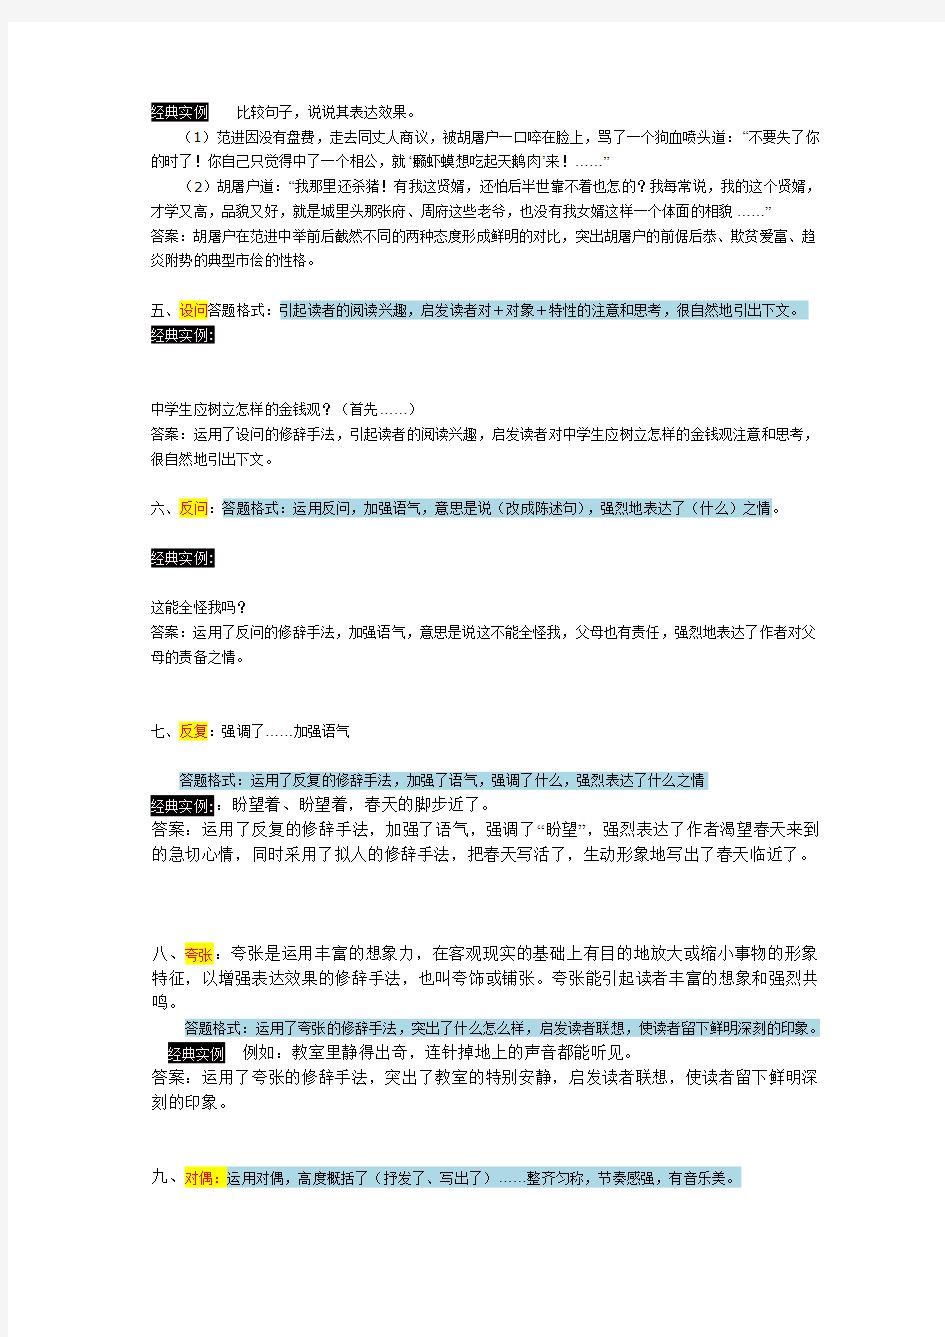 初中语文阅读答题技巧之修辞手法的作用